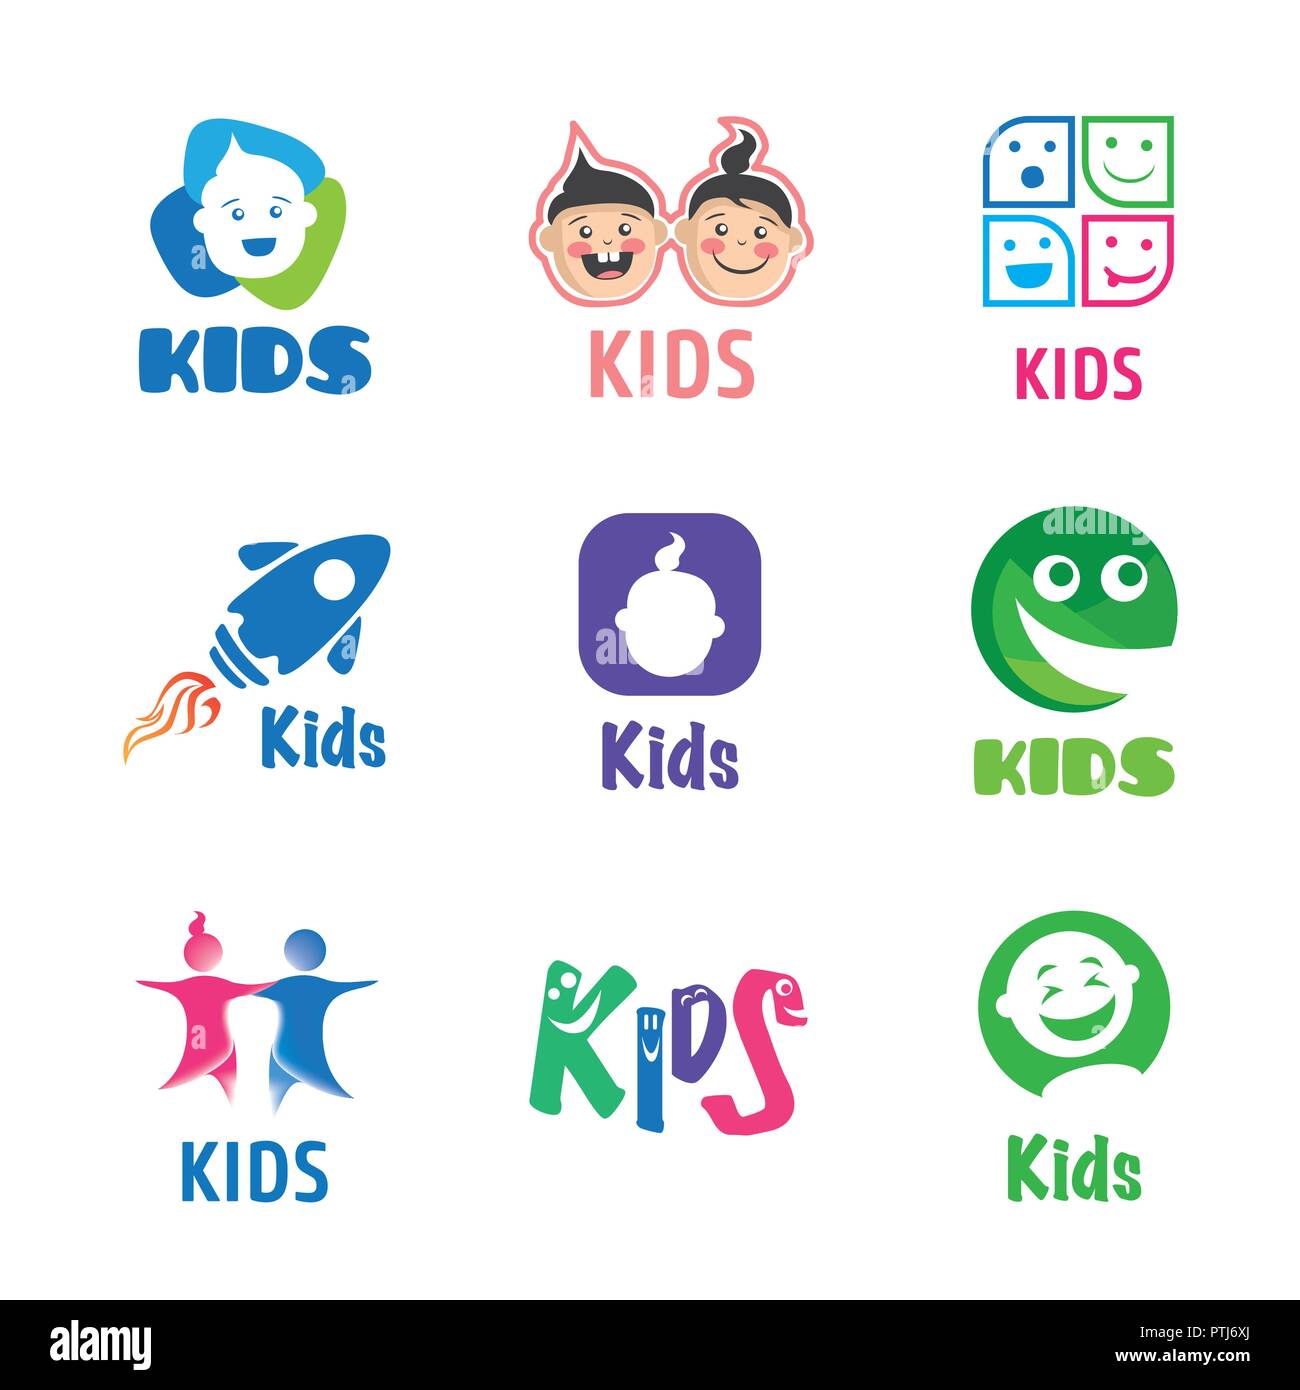 Kids Company Logos